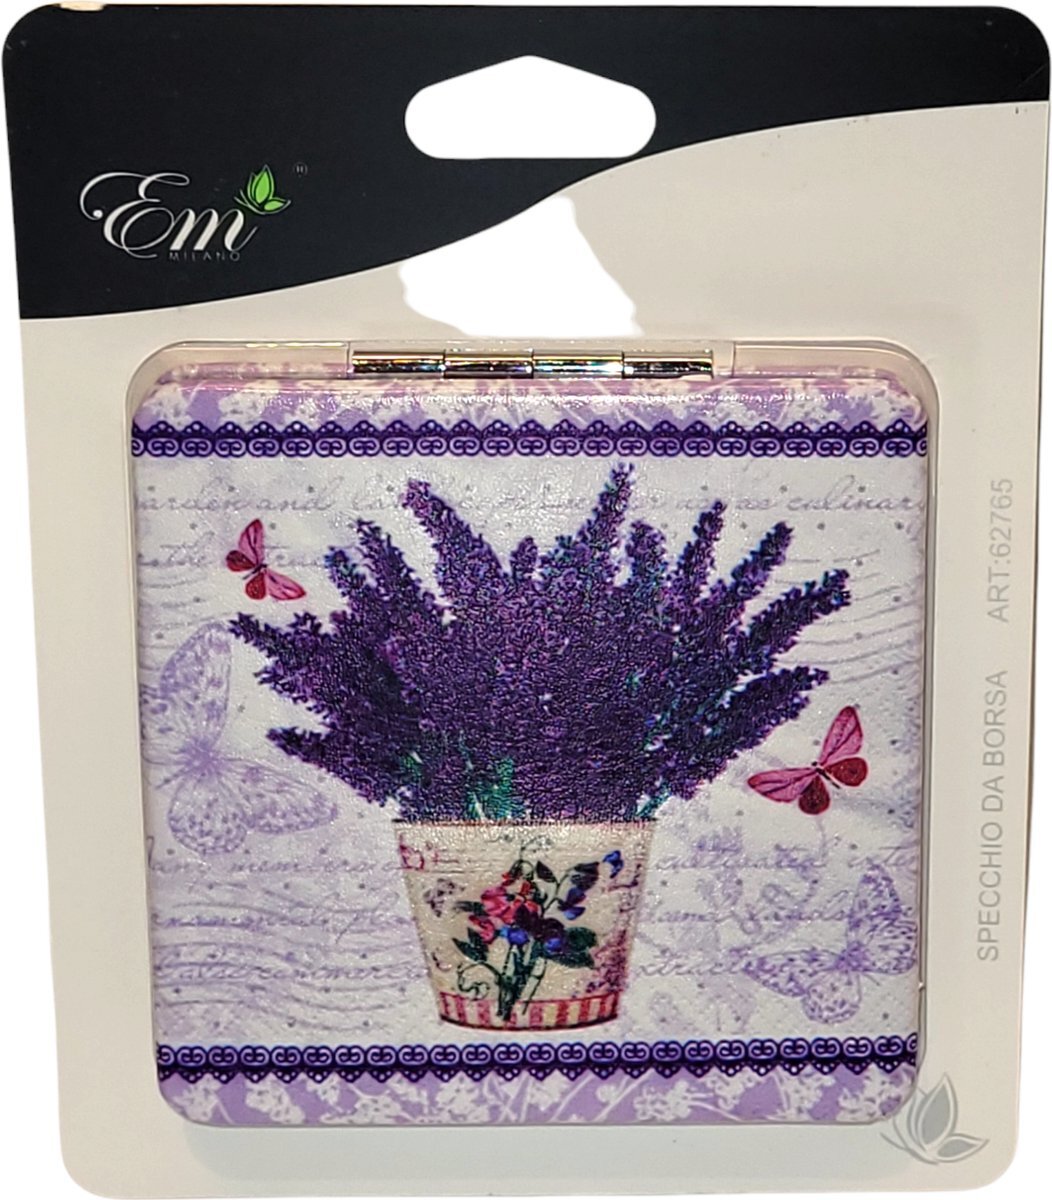 EM Milano Make-up Spiegel - Tasspiegel - Lavendel met Vlinders - Dubbele Spiegel voor in de Tas - 2x Vergroot Spiegel - Handspiegel - Mini Spiegel